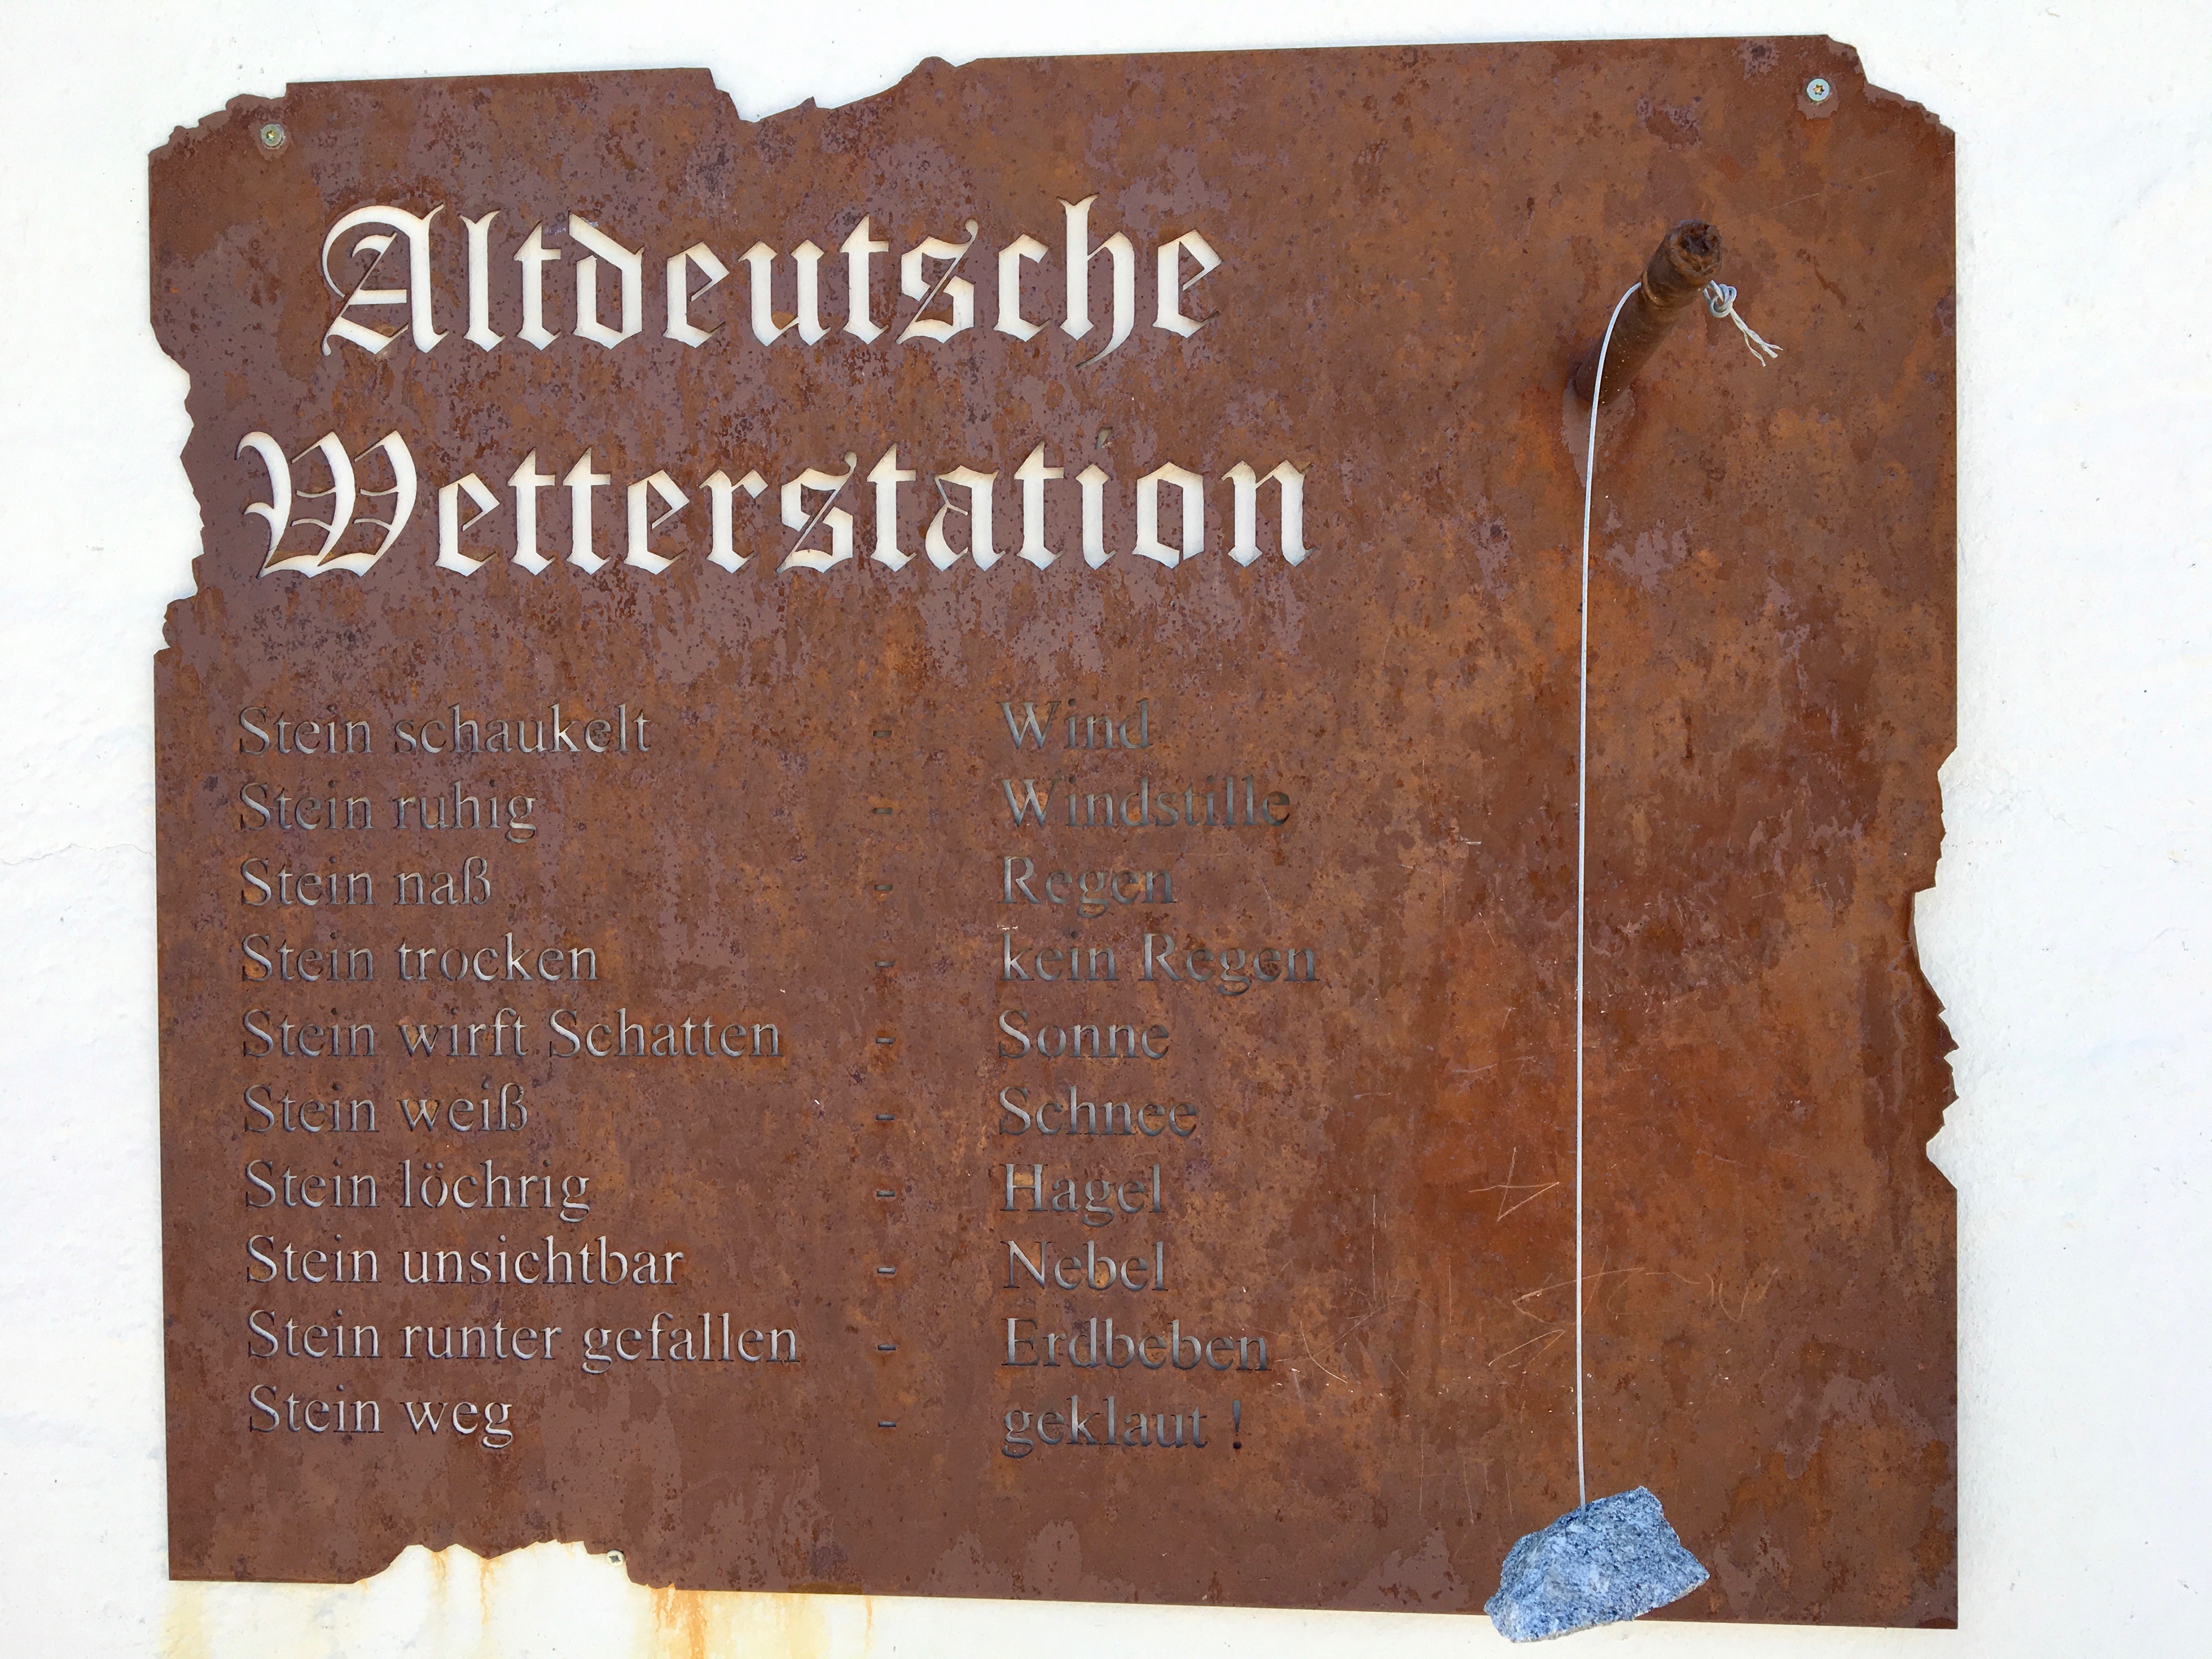 Altdeutsche Wetterstation